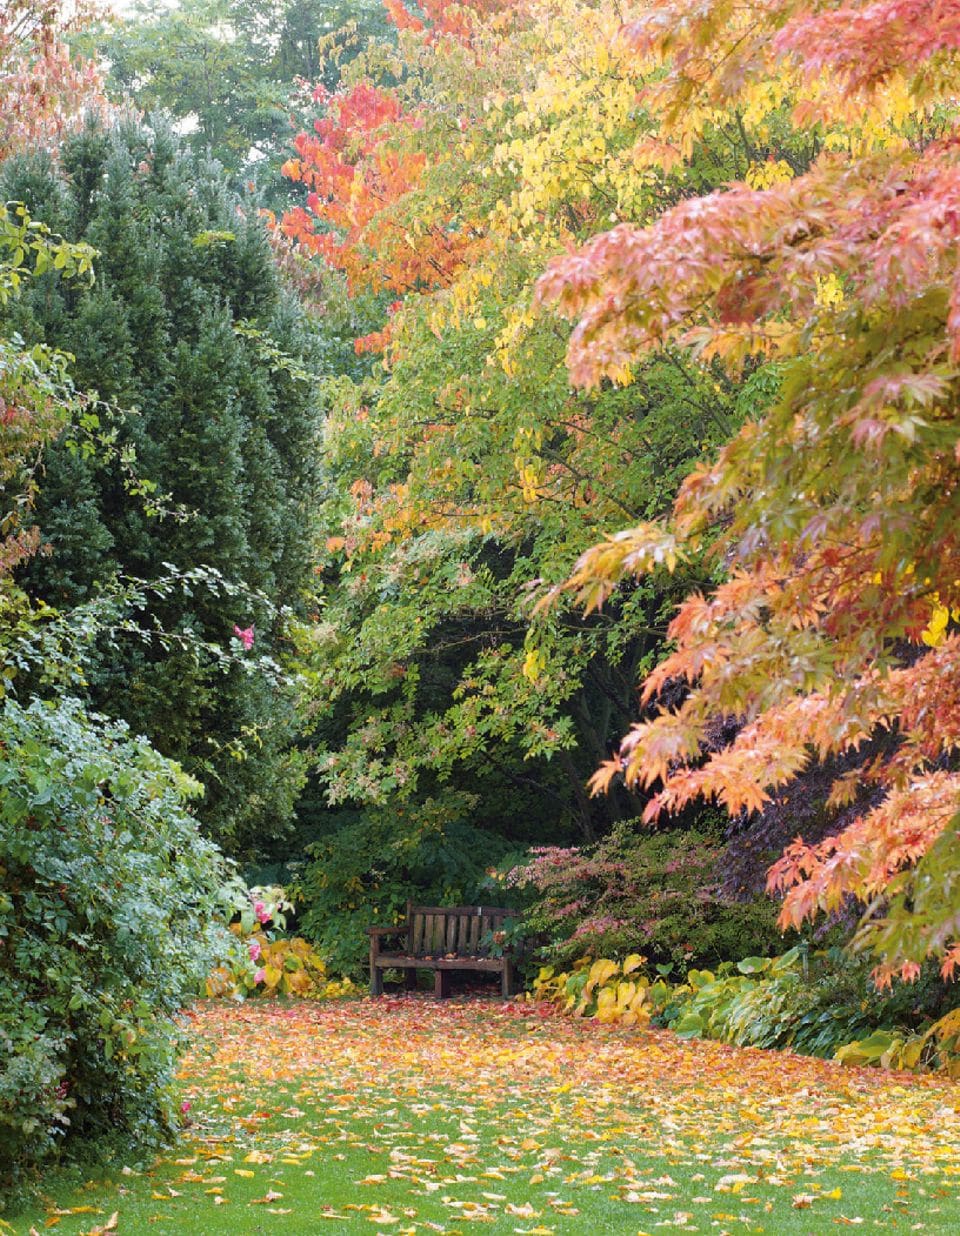 Bäume mit buntem Herbstlaub im Garten.